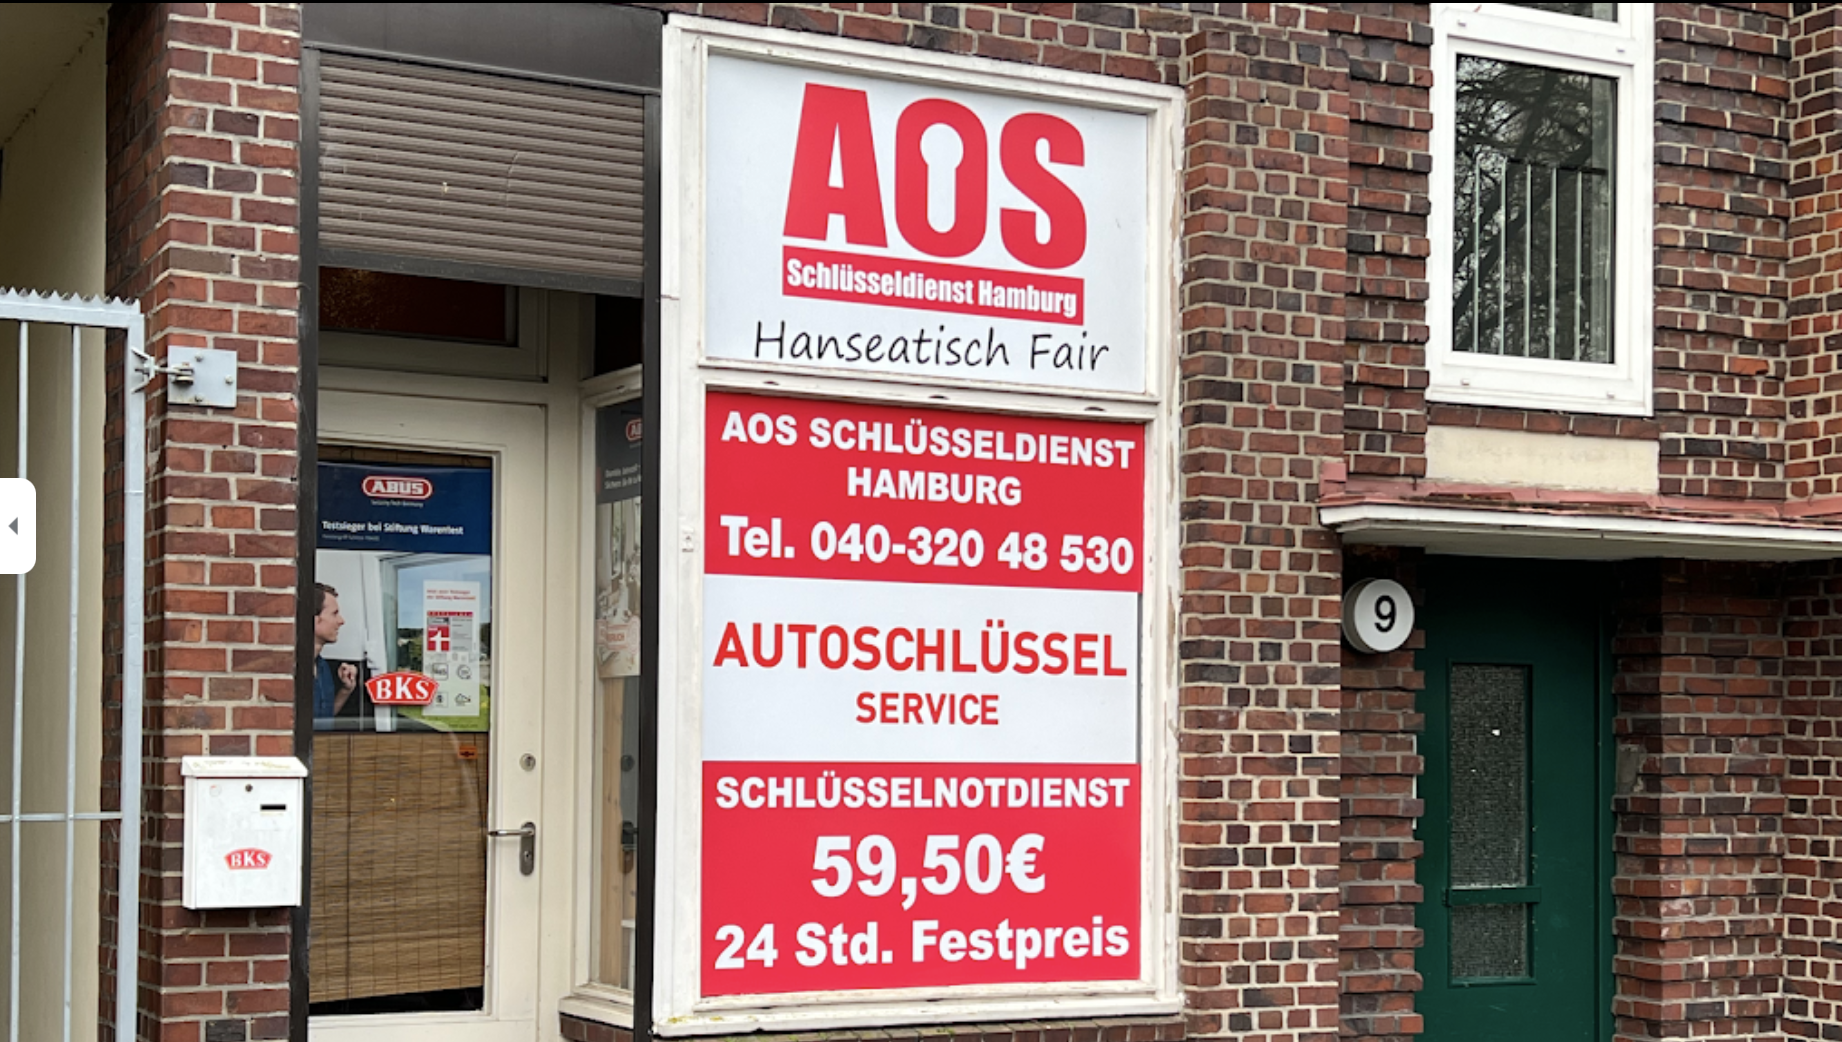 AOS Schlüsseldienst & Schlüsselnotdienst Hamburg ( Autoschlüssel Service ), Habichtspl. 9 in Hamburg